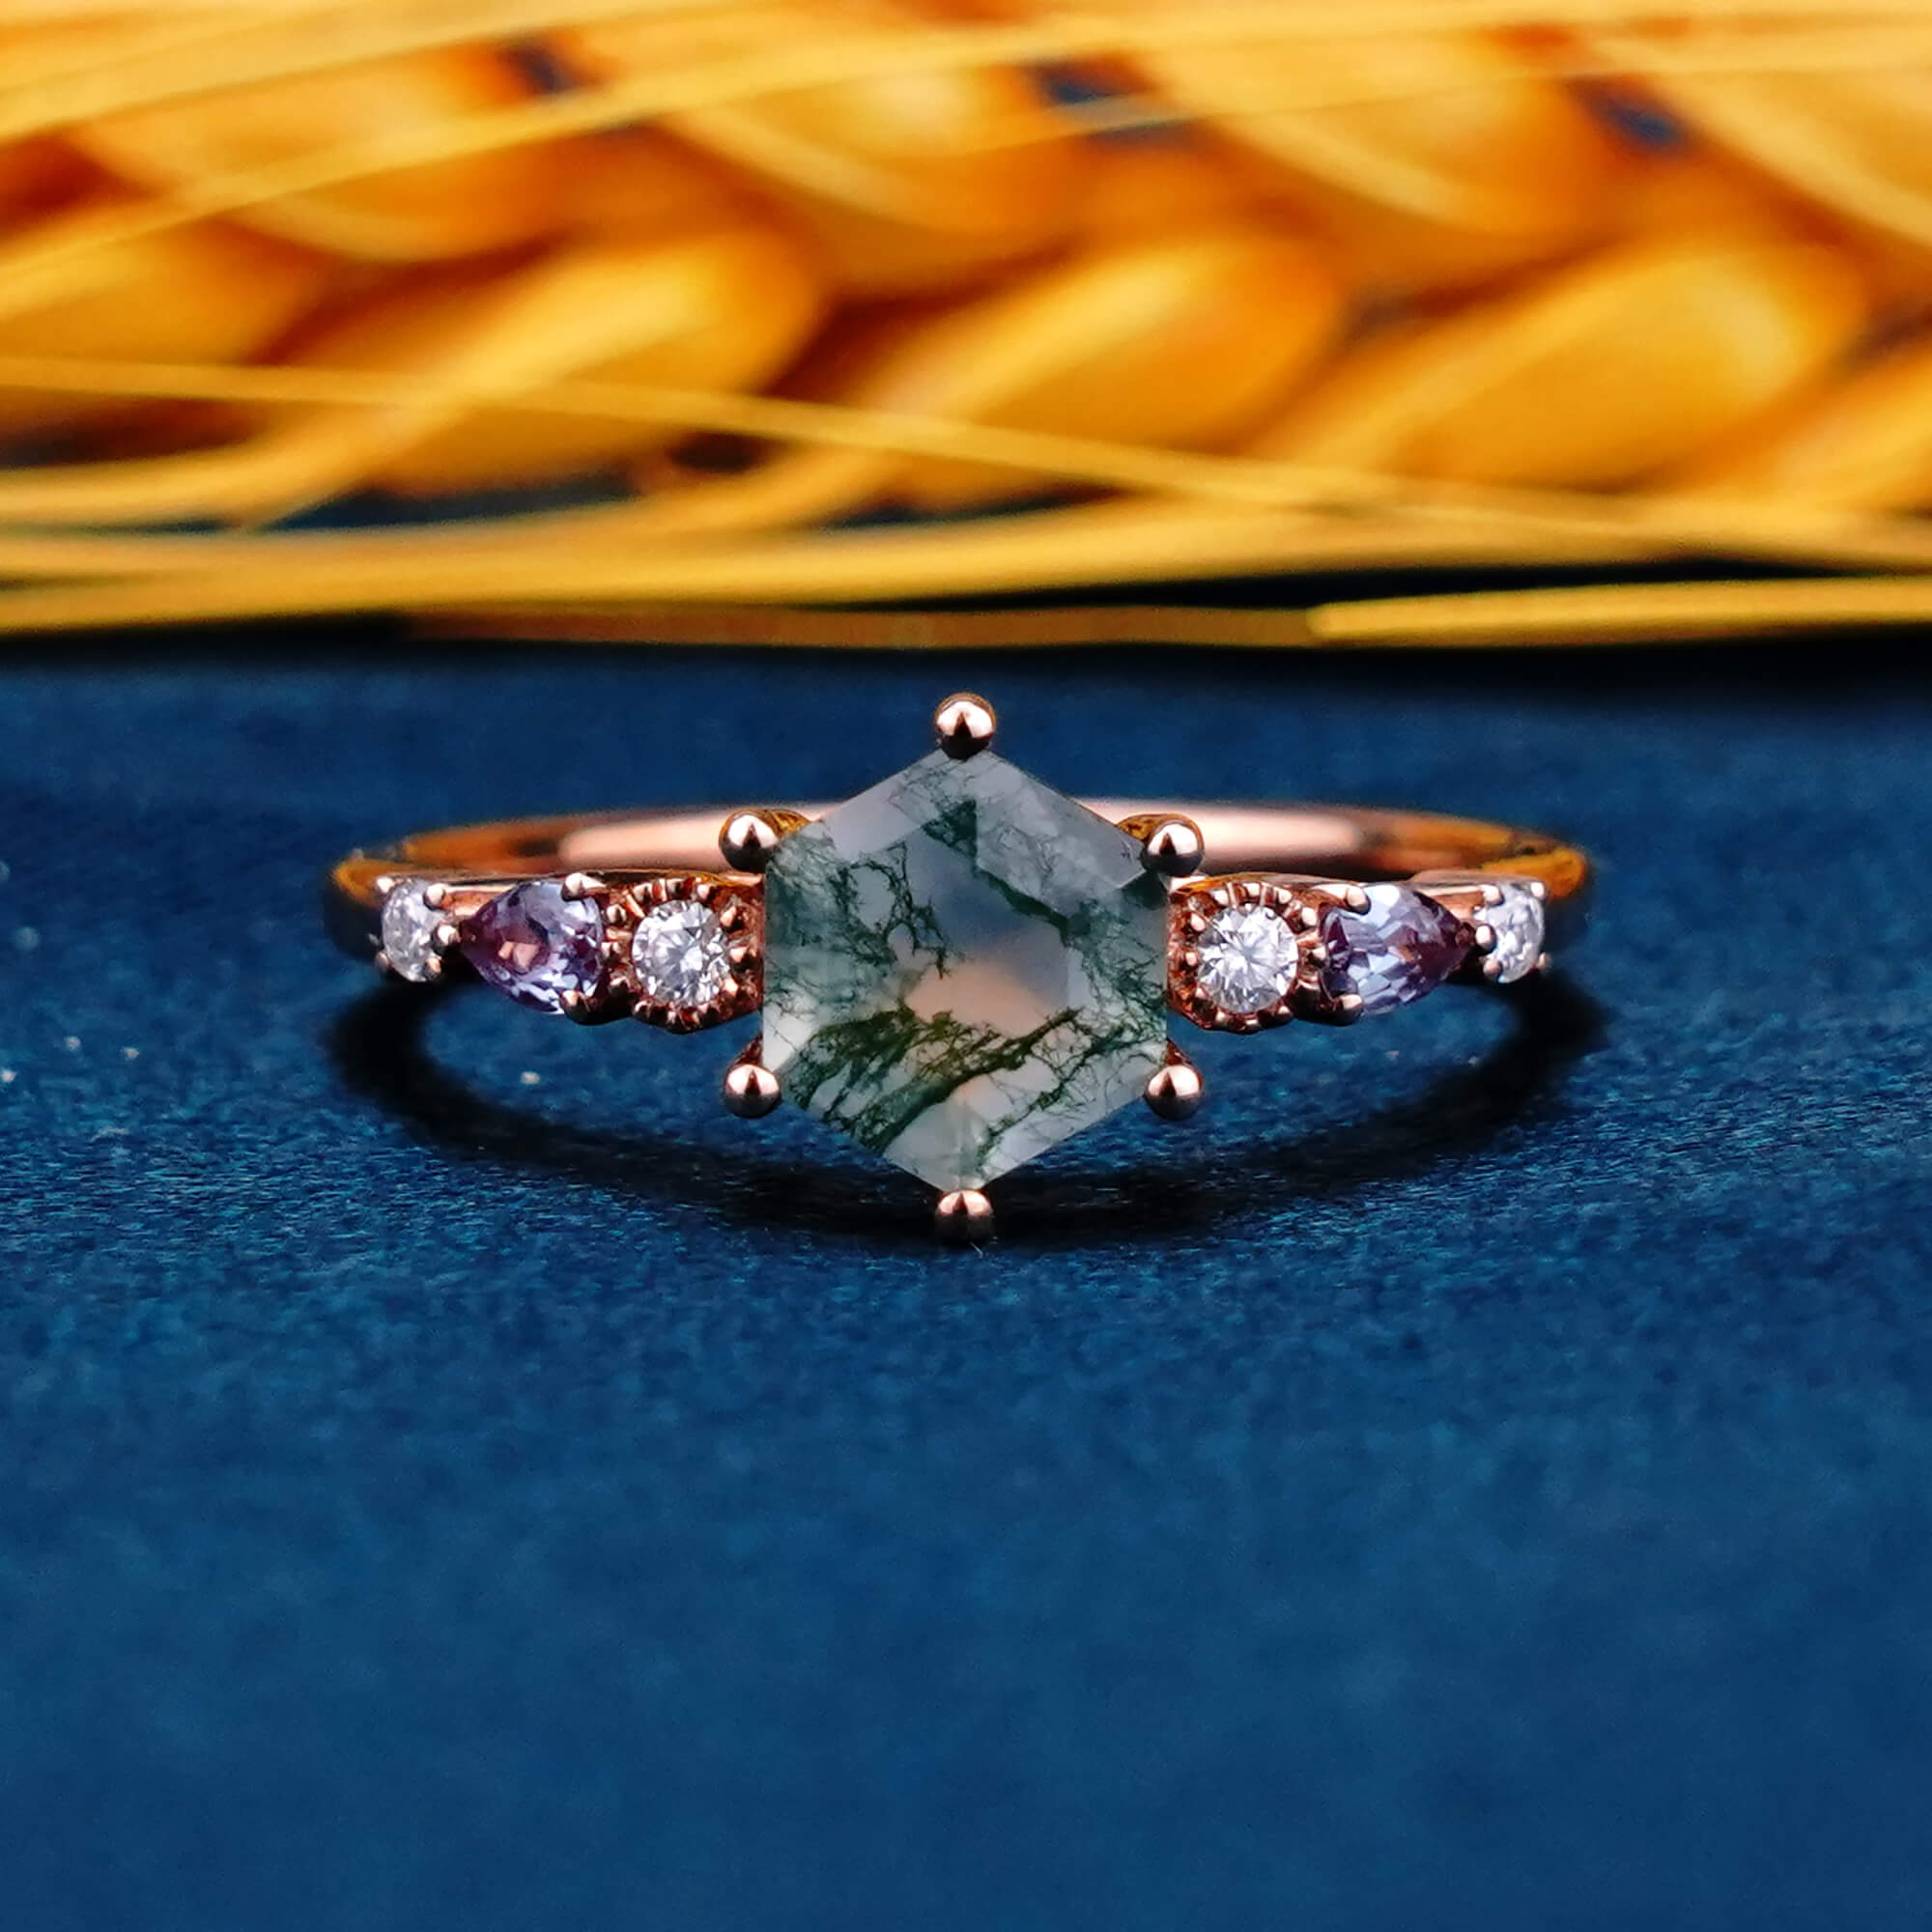 Hexagonal Cut Moss Agate Engagement Rings Natural Green Gem Custom Soild 14 Gold Ring Promise Anniversary Ring For Women Gift